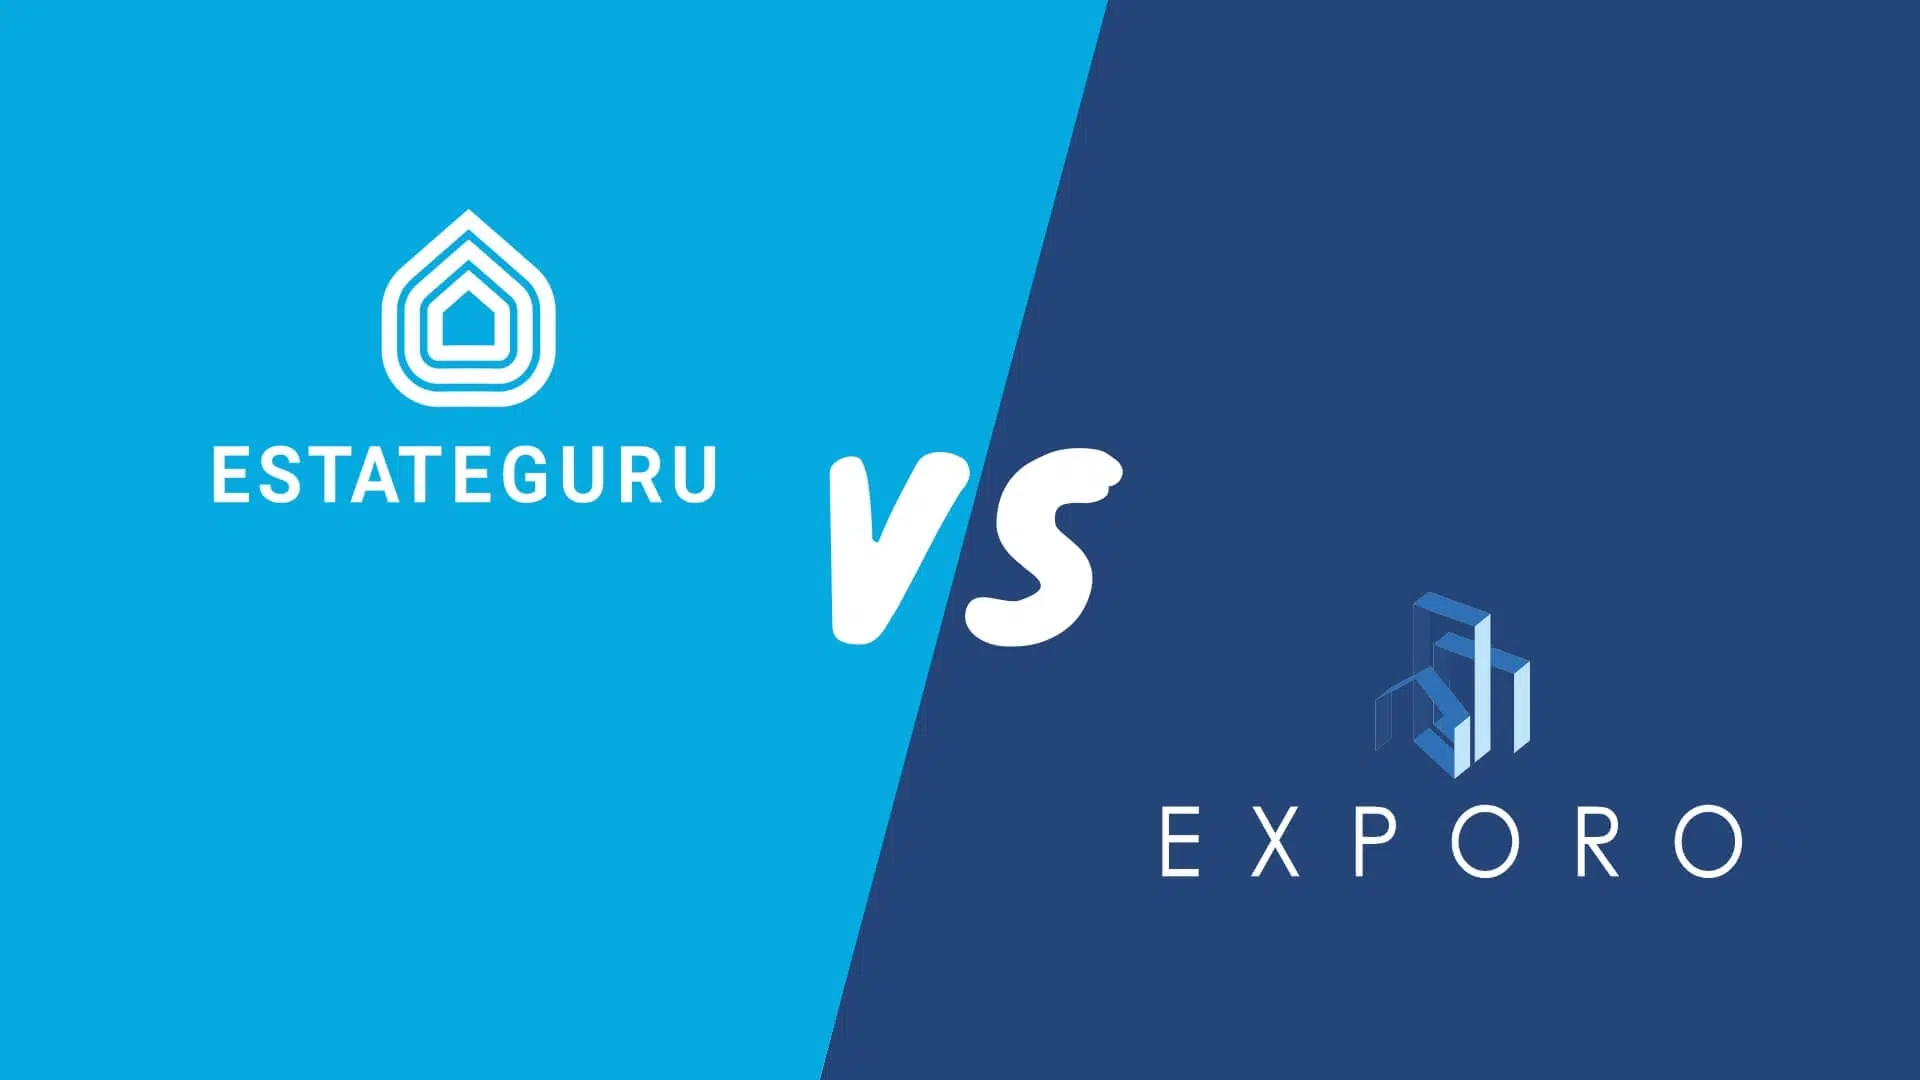 EstateGuru vs Exporo Vergleich Bewertung Test P2P-Plattform Immobilien Crowdinvesting Erfahrungen